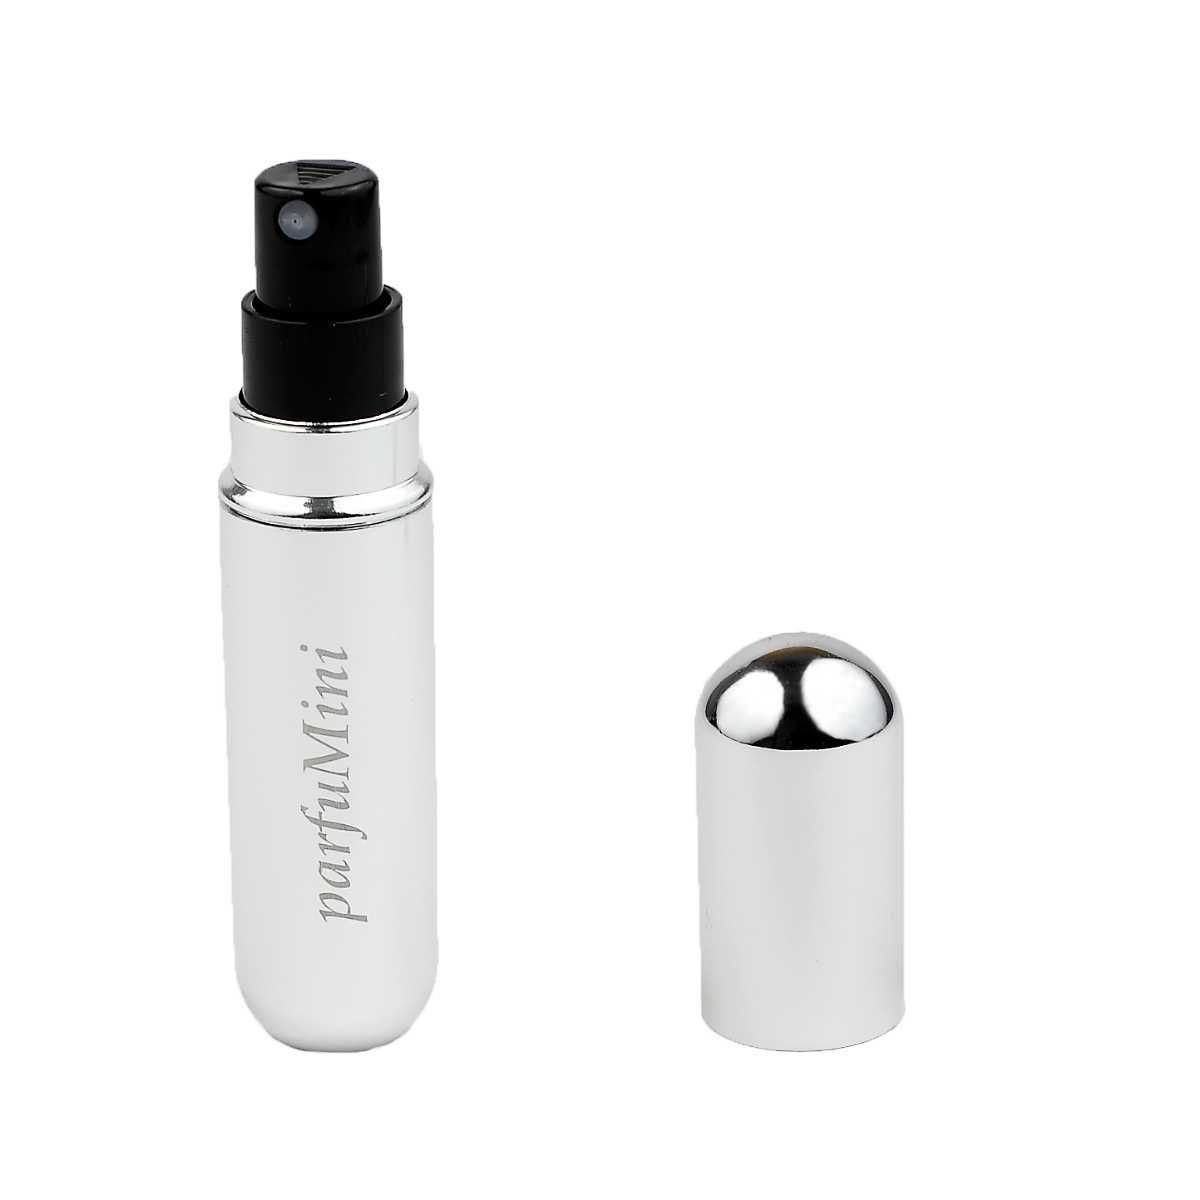 Атомайзери для парфумерії багаторазового використання (2 штуки)